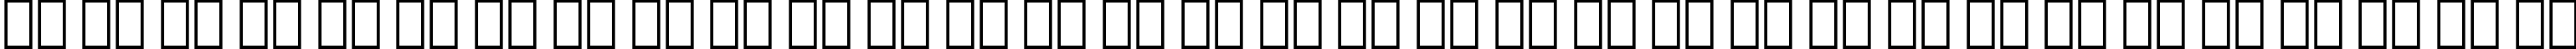 Пример написания русского алфавита шрифтом English 111 Adagio BT